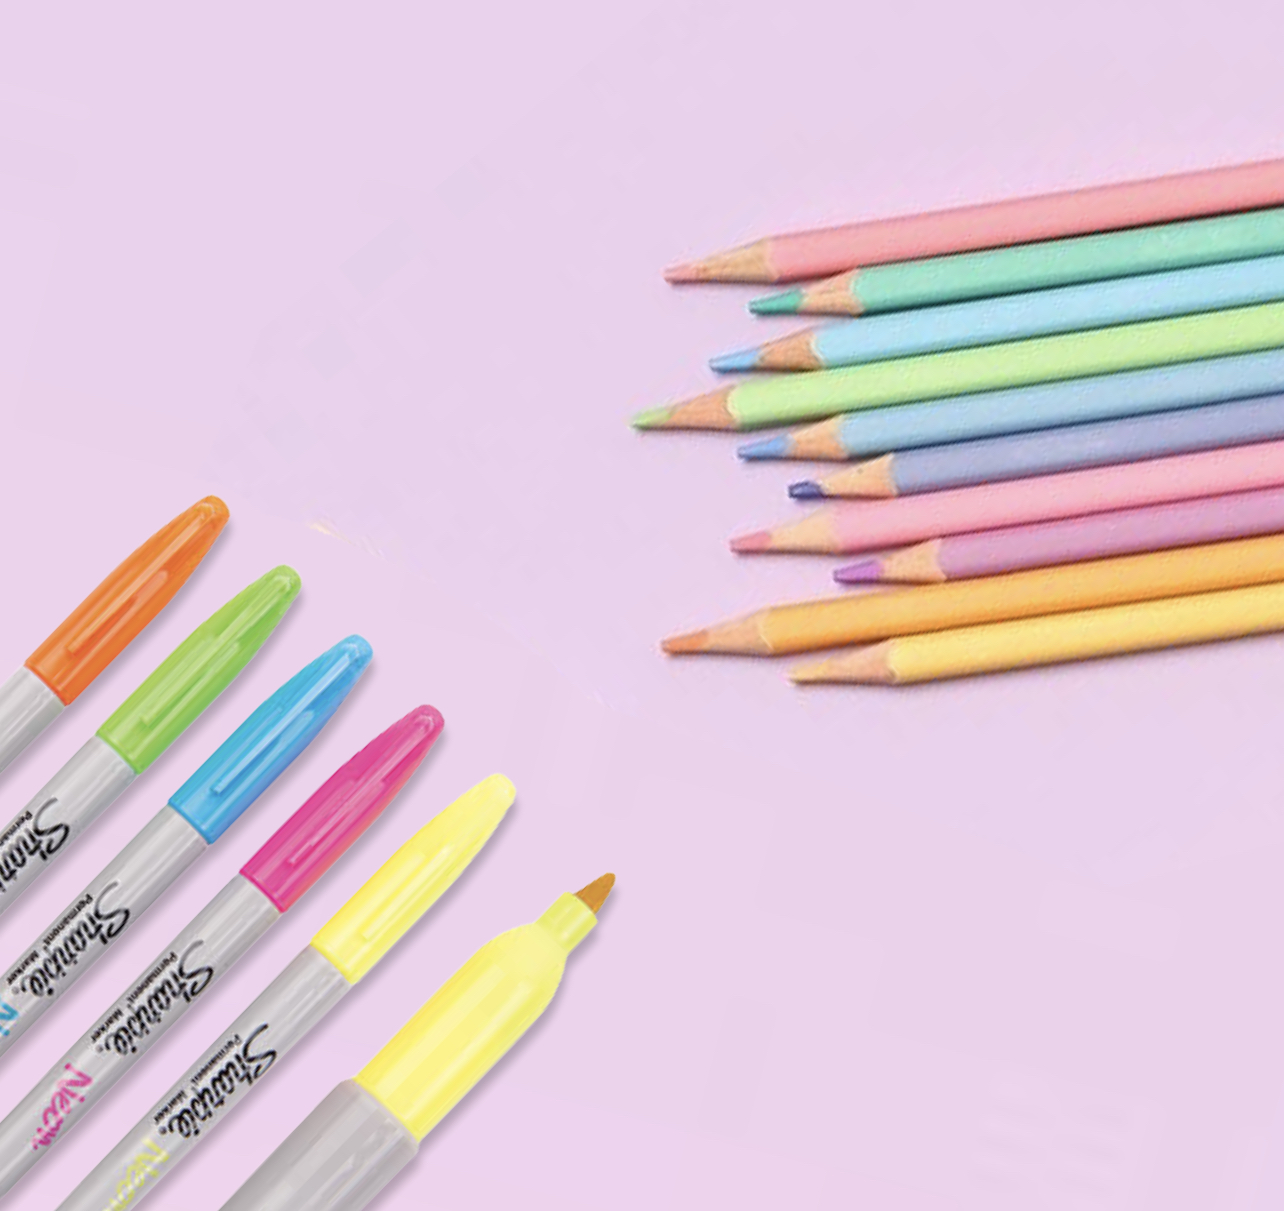 Coloring pens & pencils